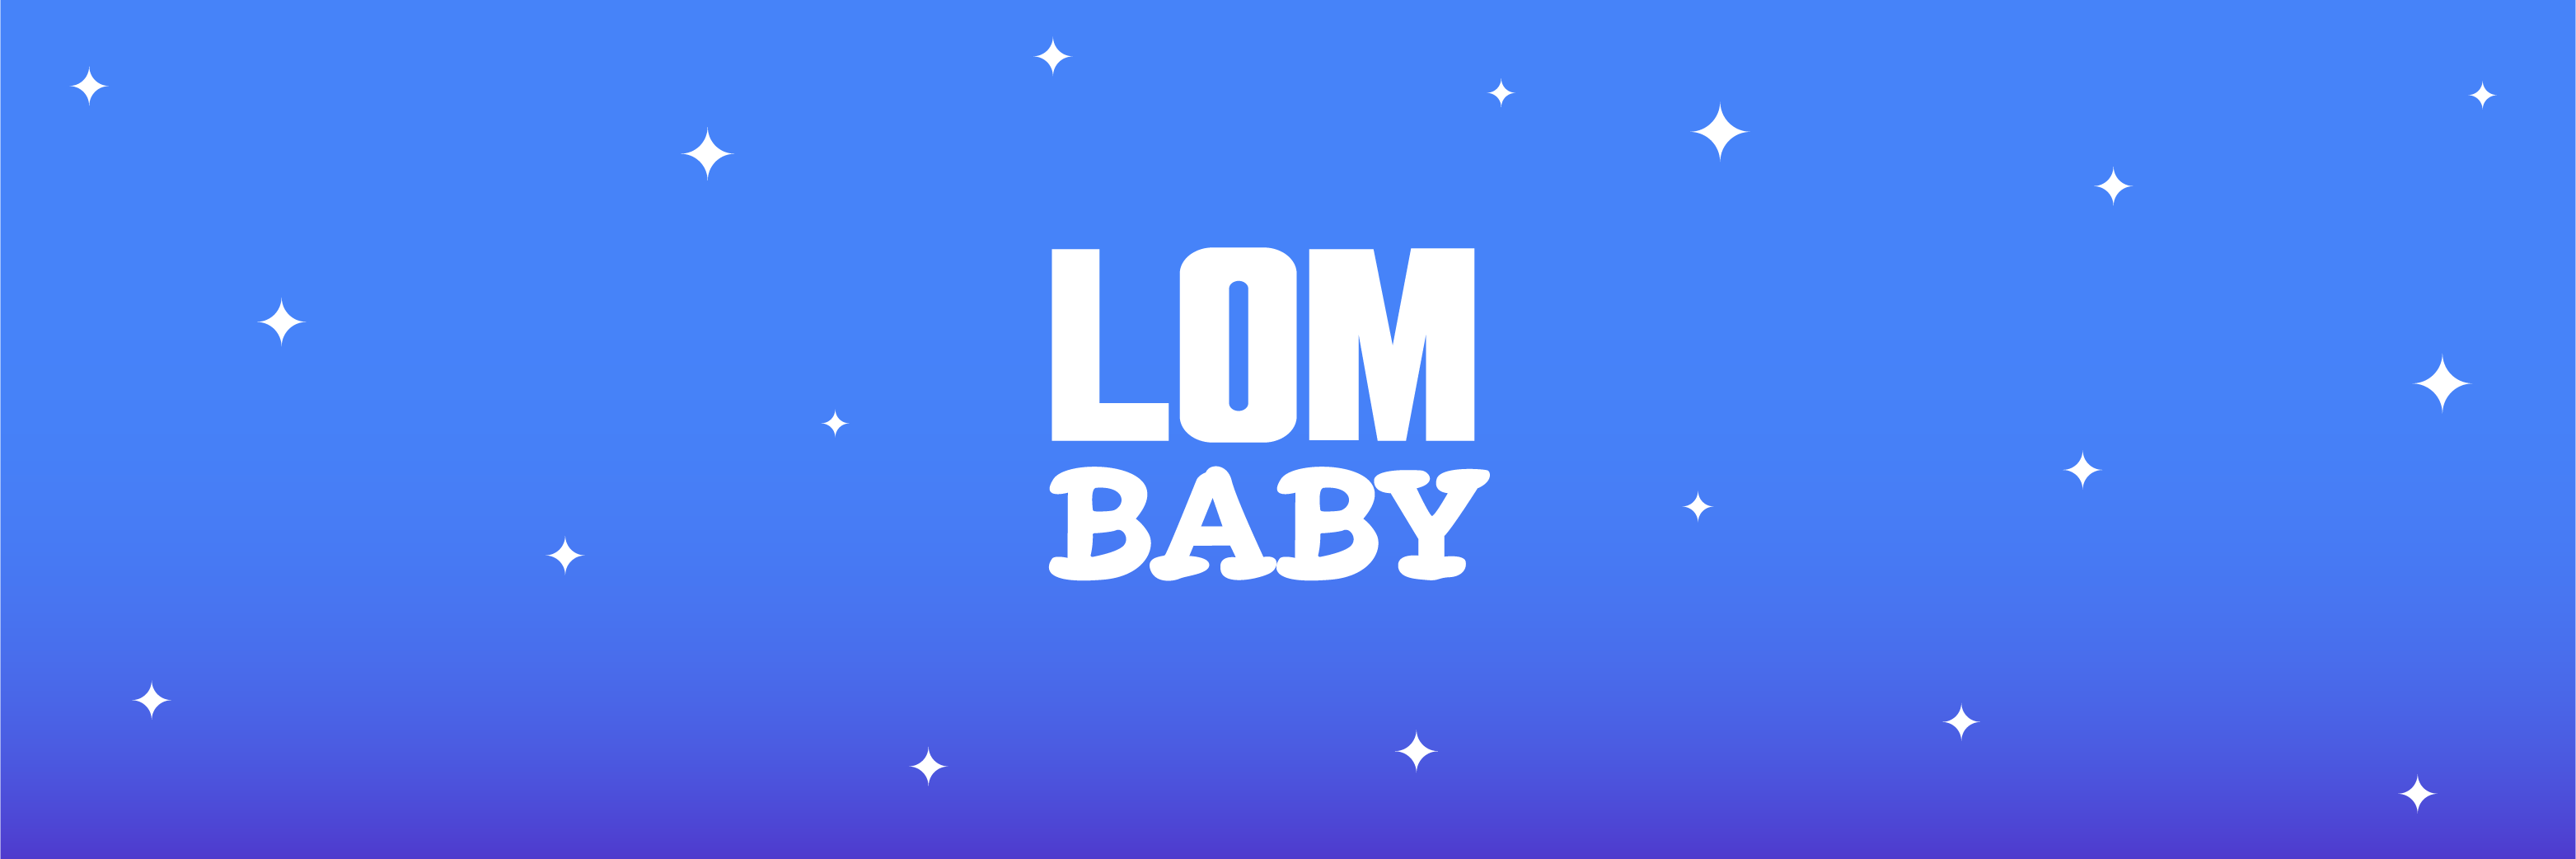 LOM BABY [phase: MOM]